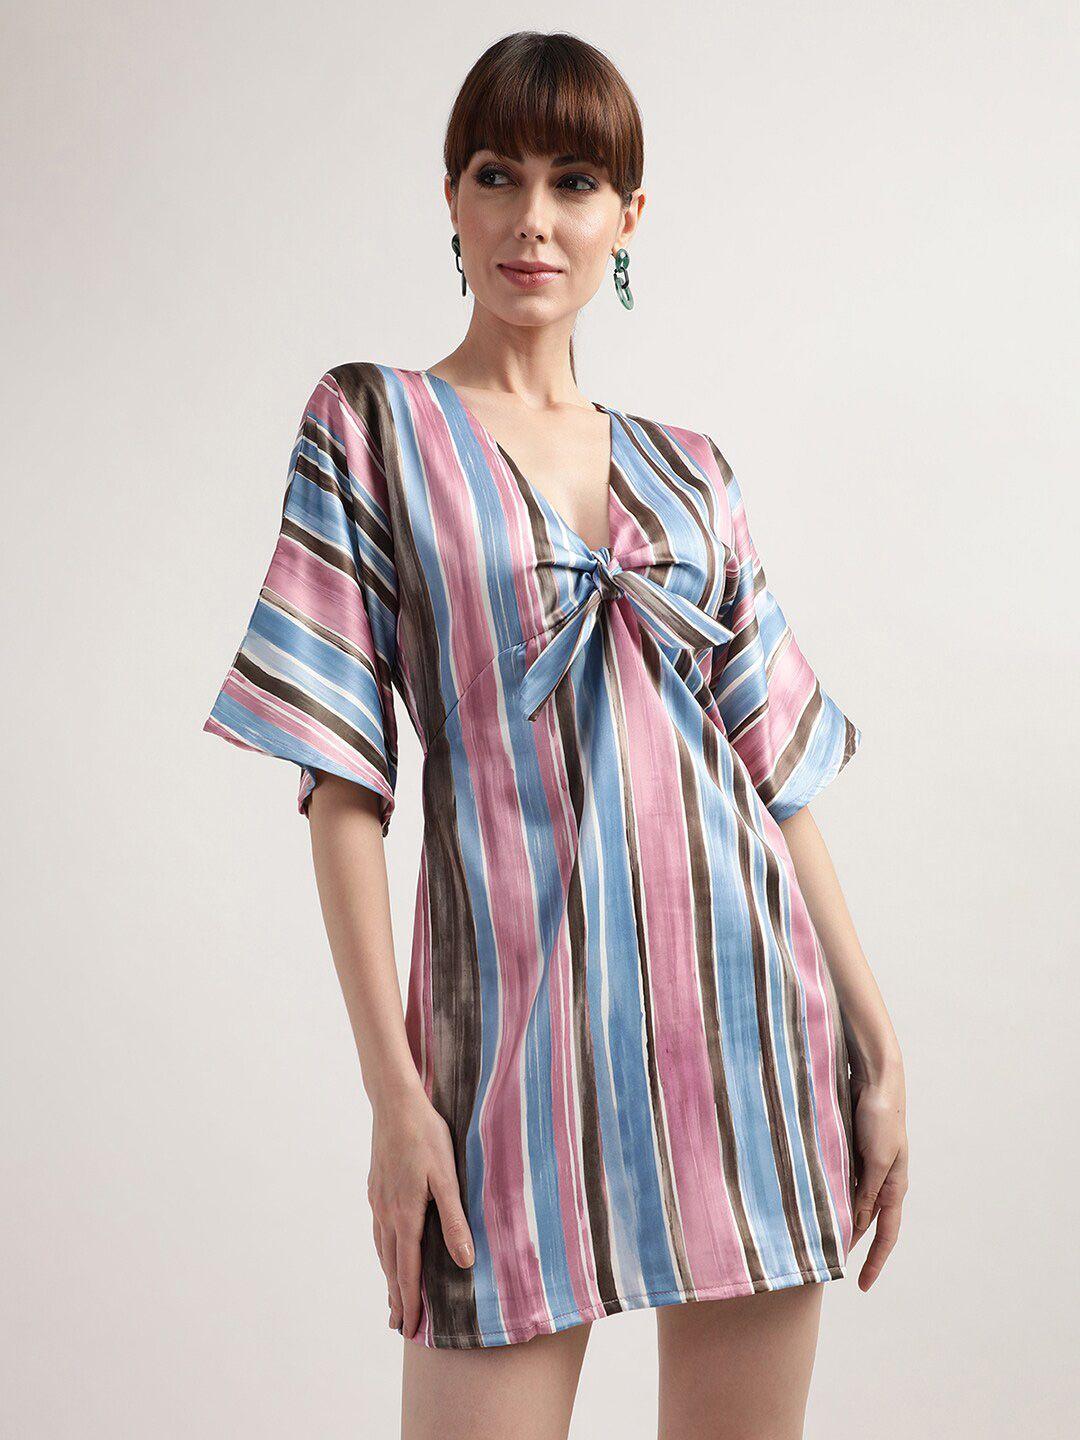 centrestage multicoloured striped a-line mini dress